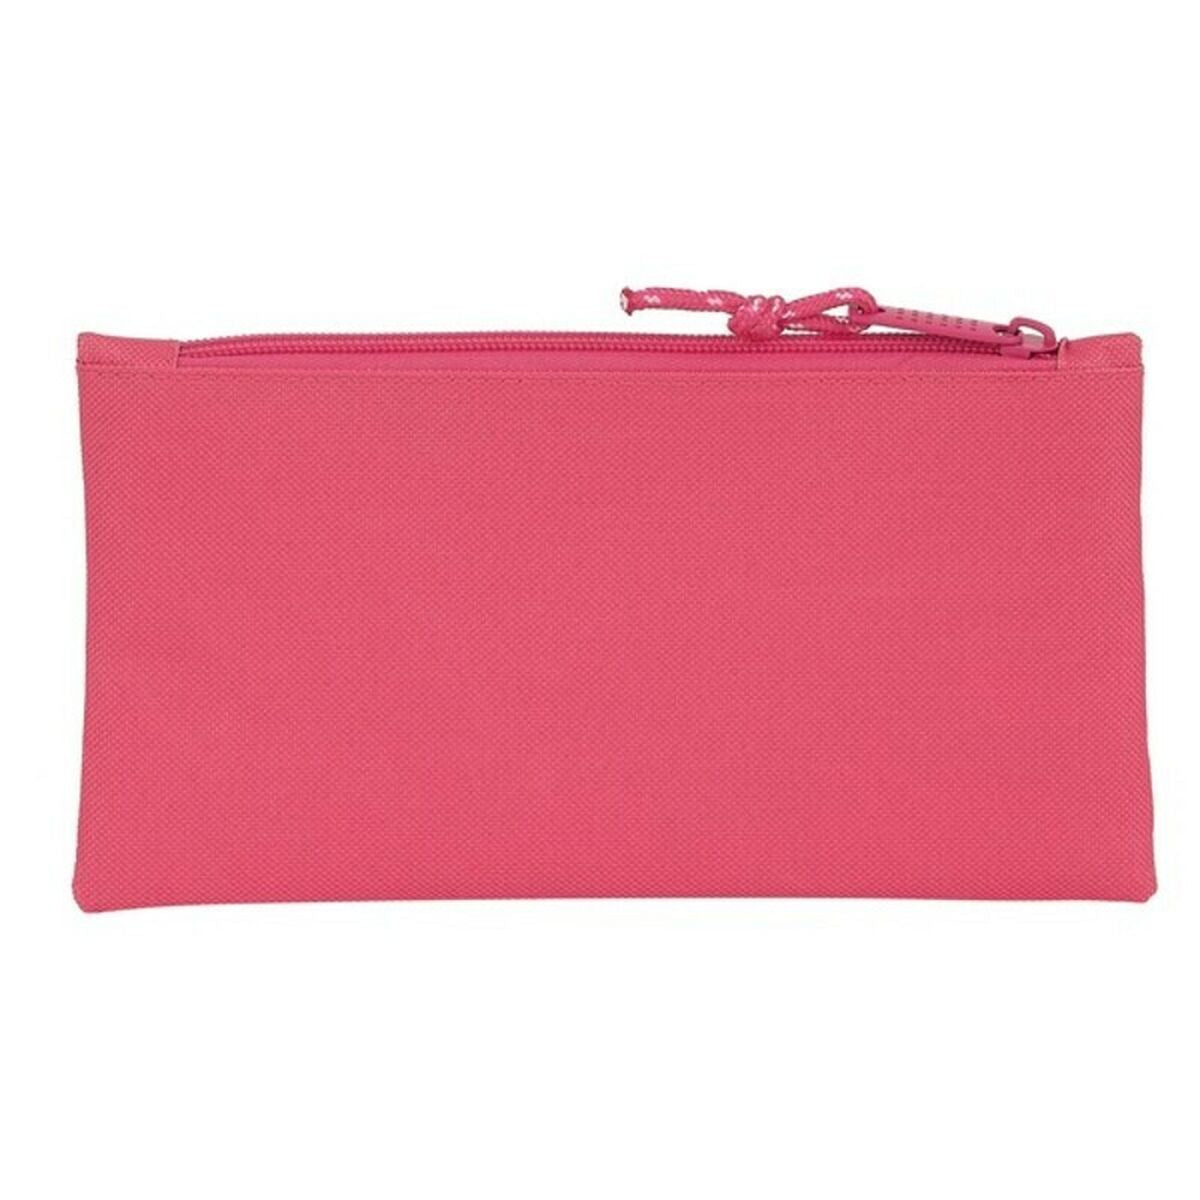 Bag BlackFit8 Rosa (22 x 11 x 1 cm)